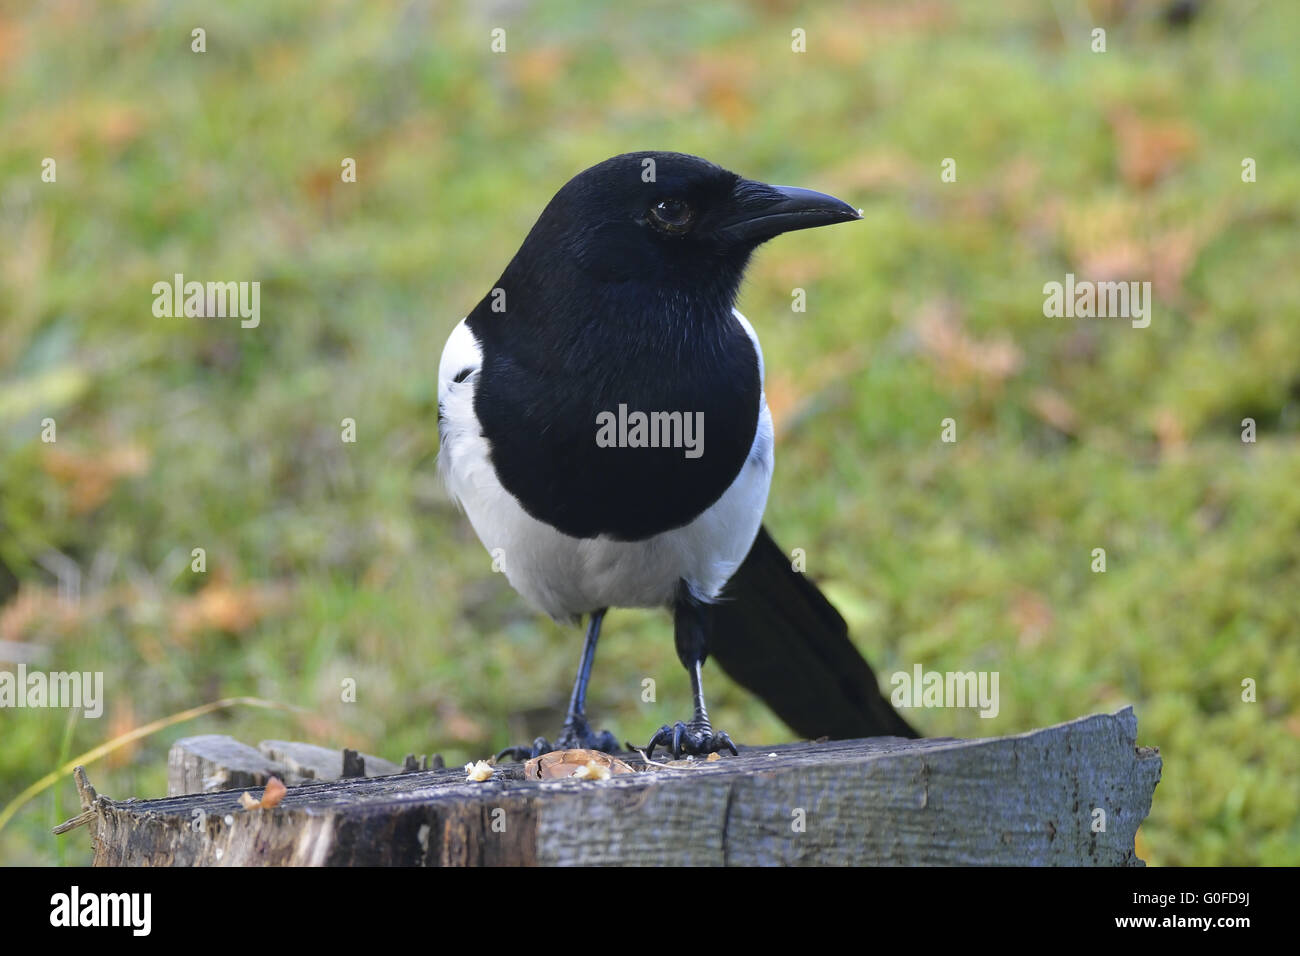 Common magpie Stock Photo